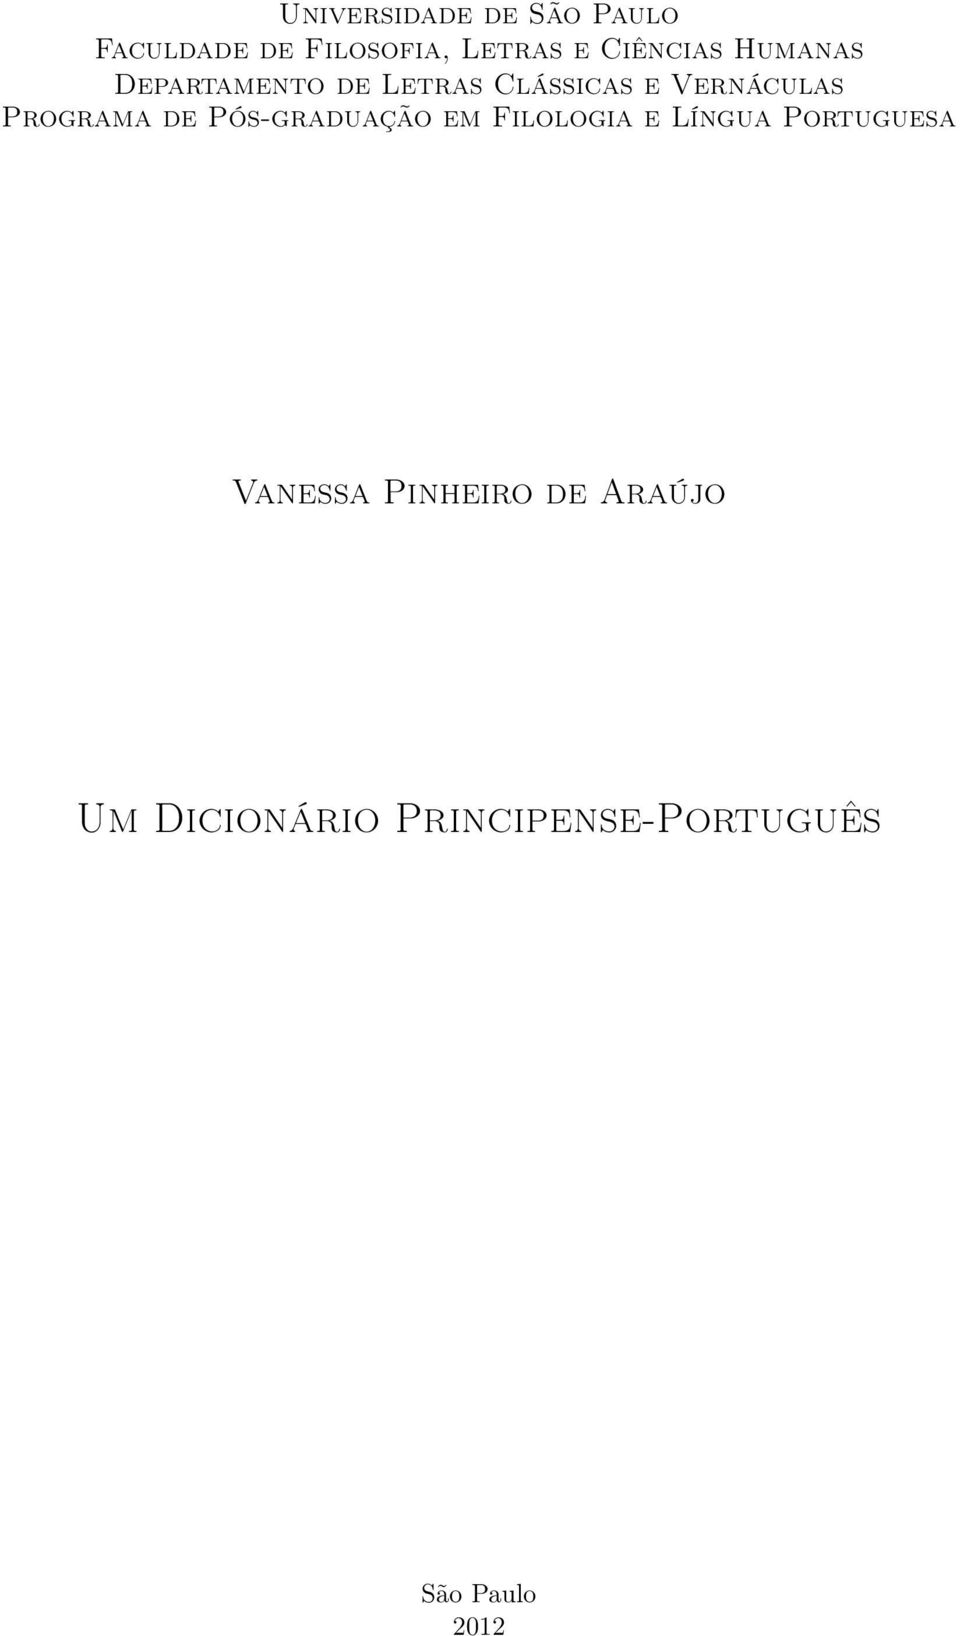 Programa de Pós-graduação em Filologia e Língua Portuguesa